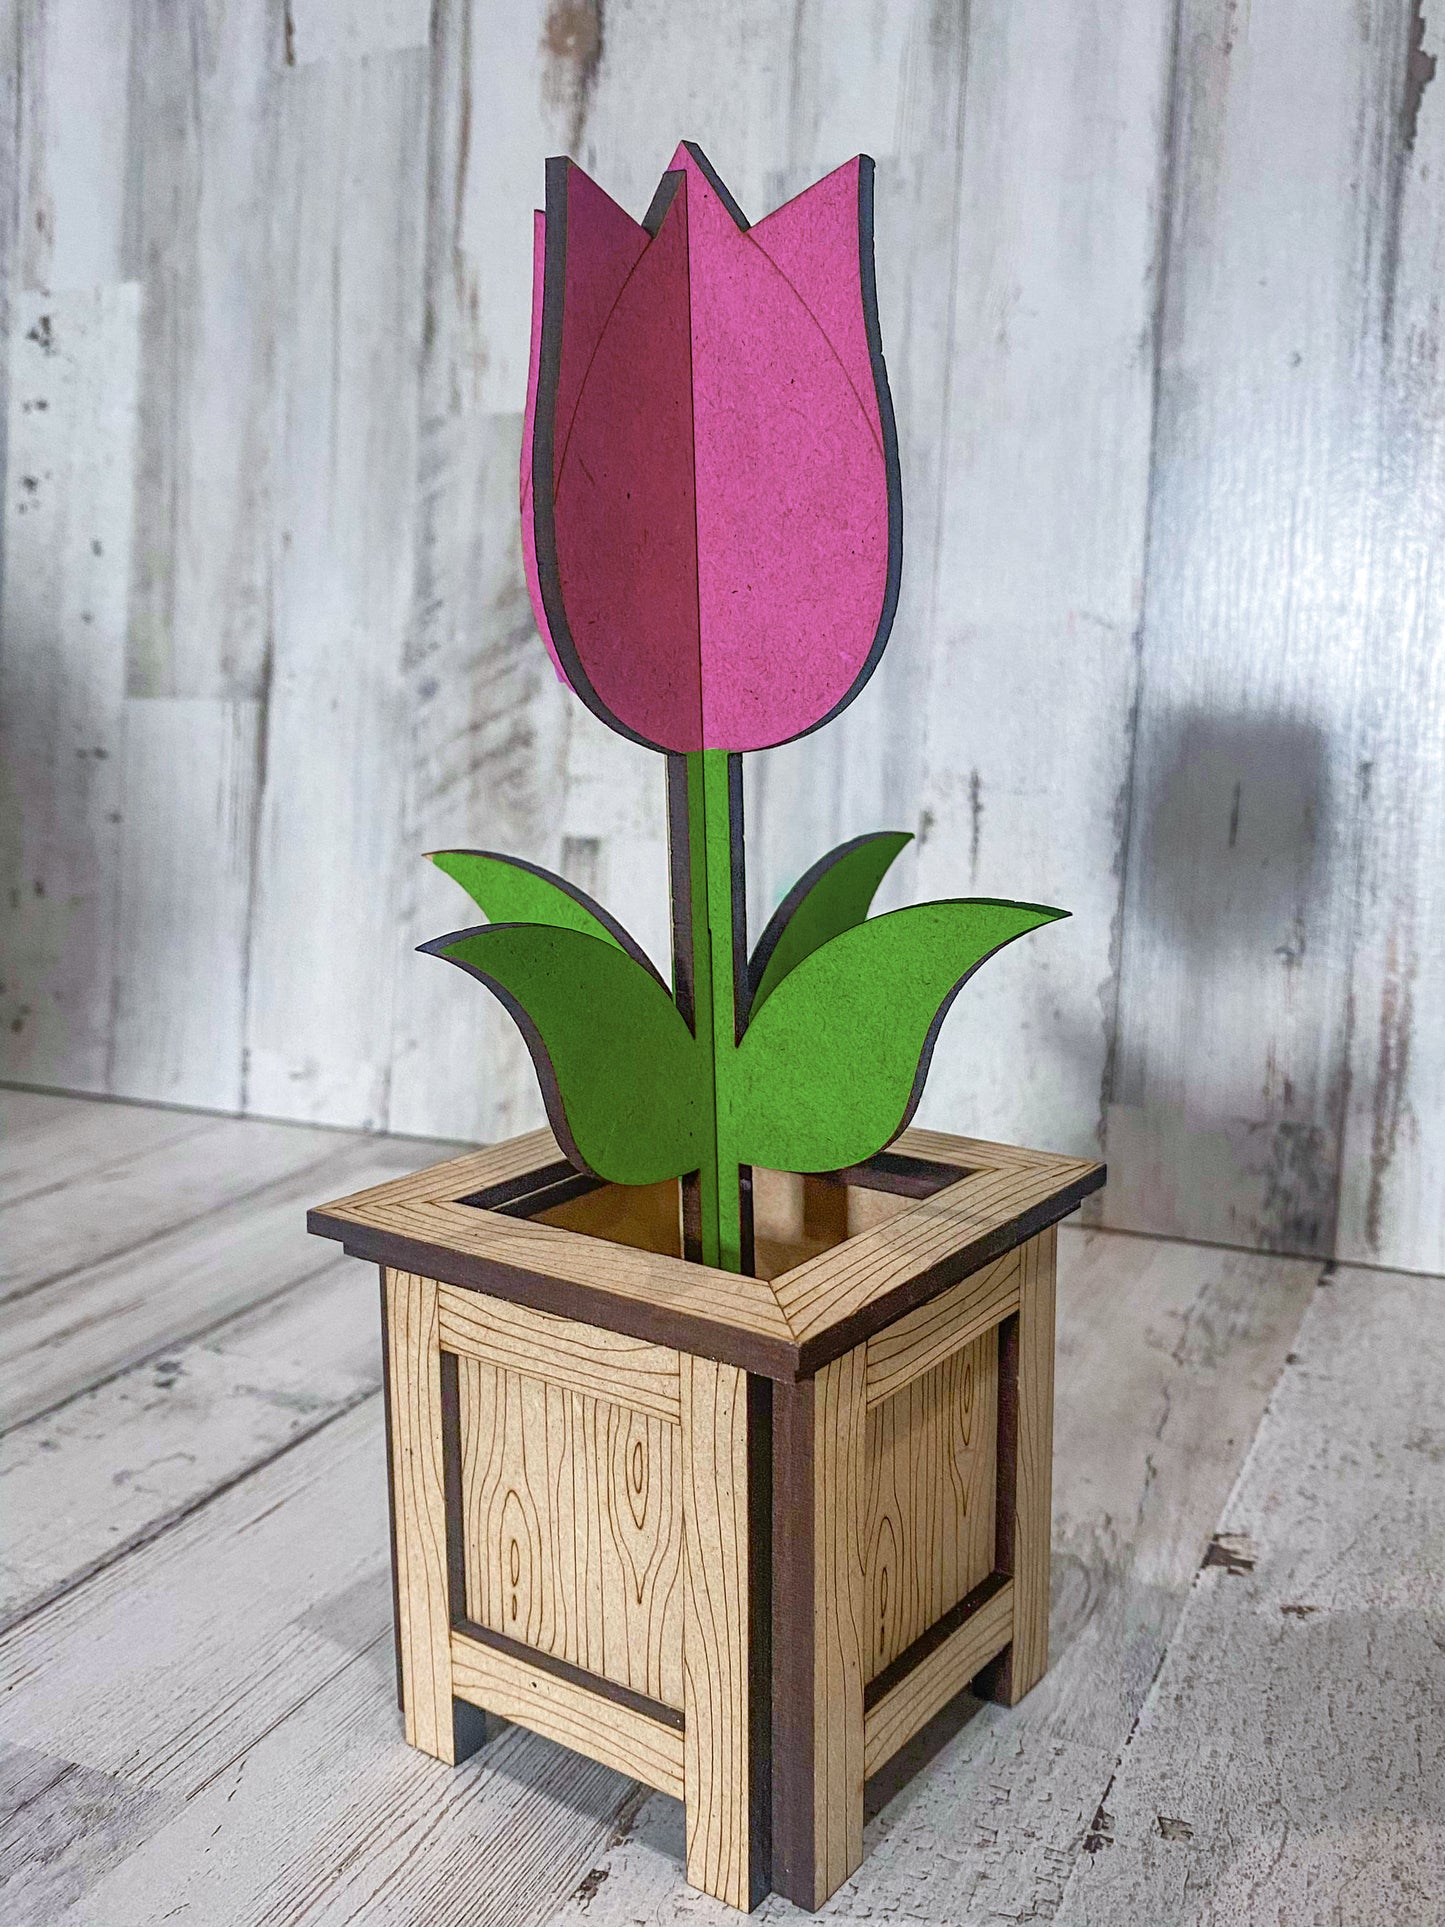 Mini Tulip Planter